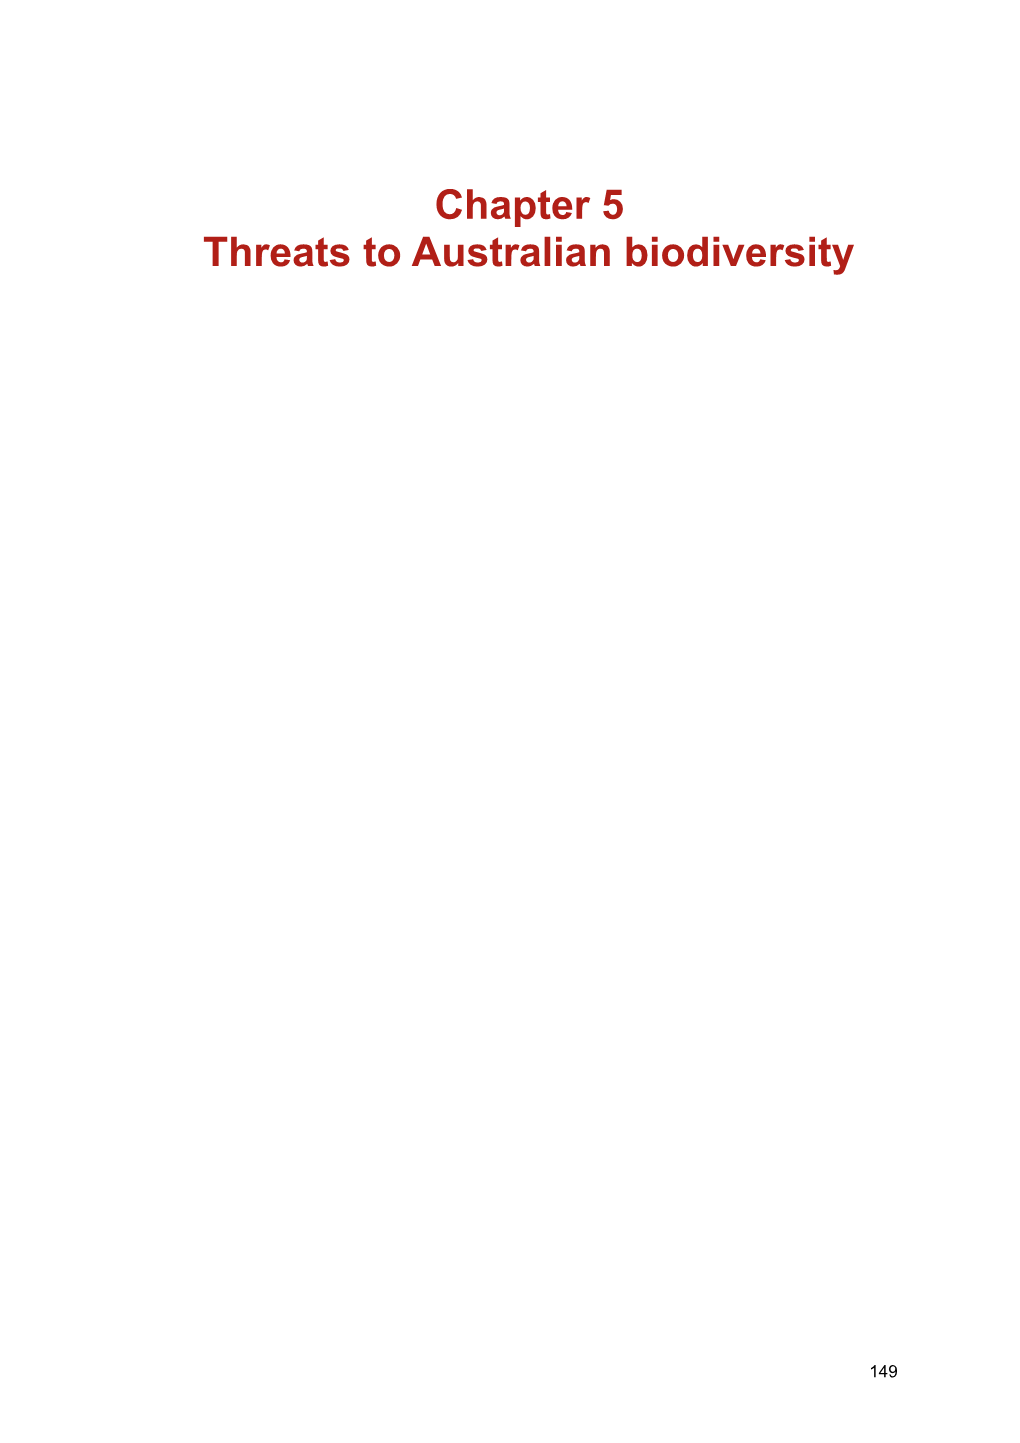 Chapter 5 Assessment of Australia's Terrestrial Biodiversity 2008